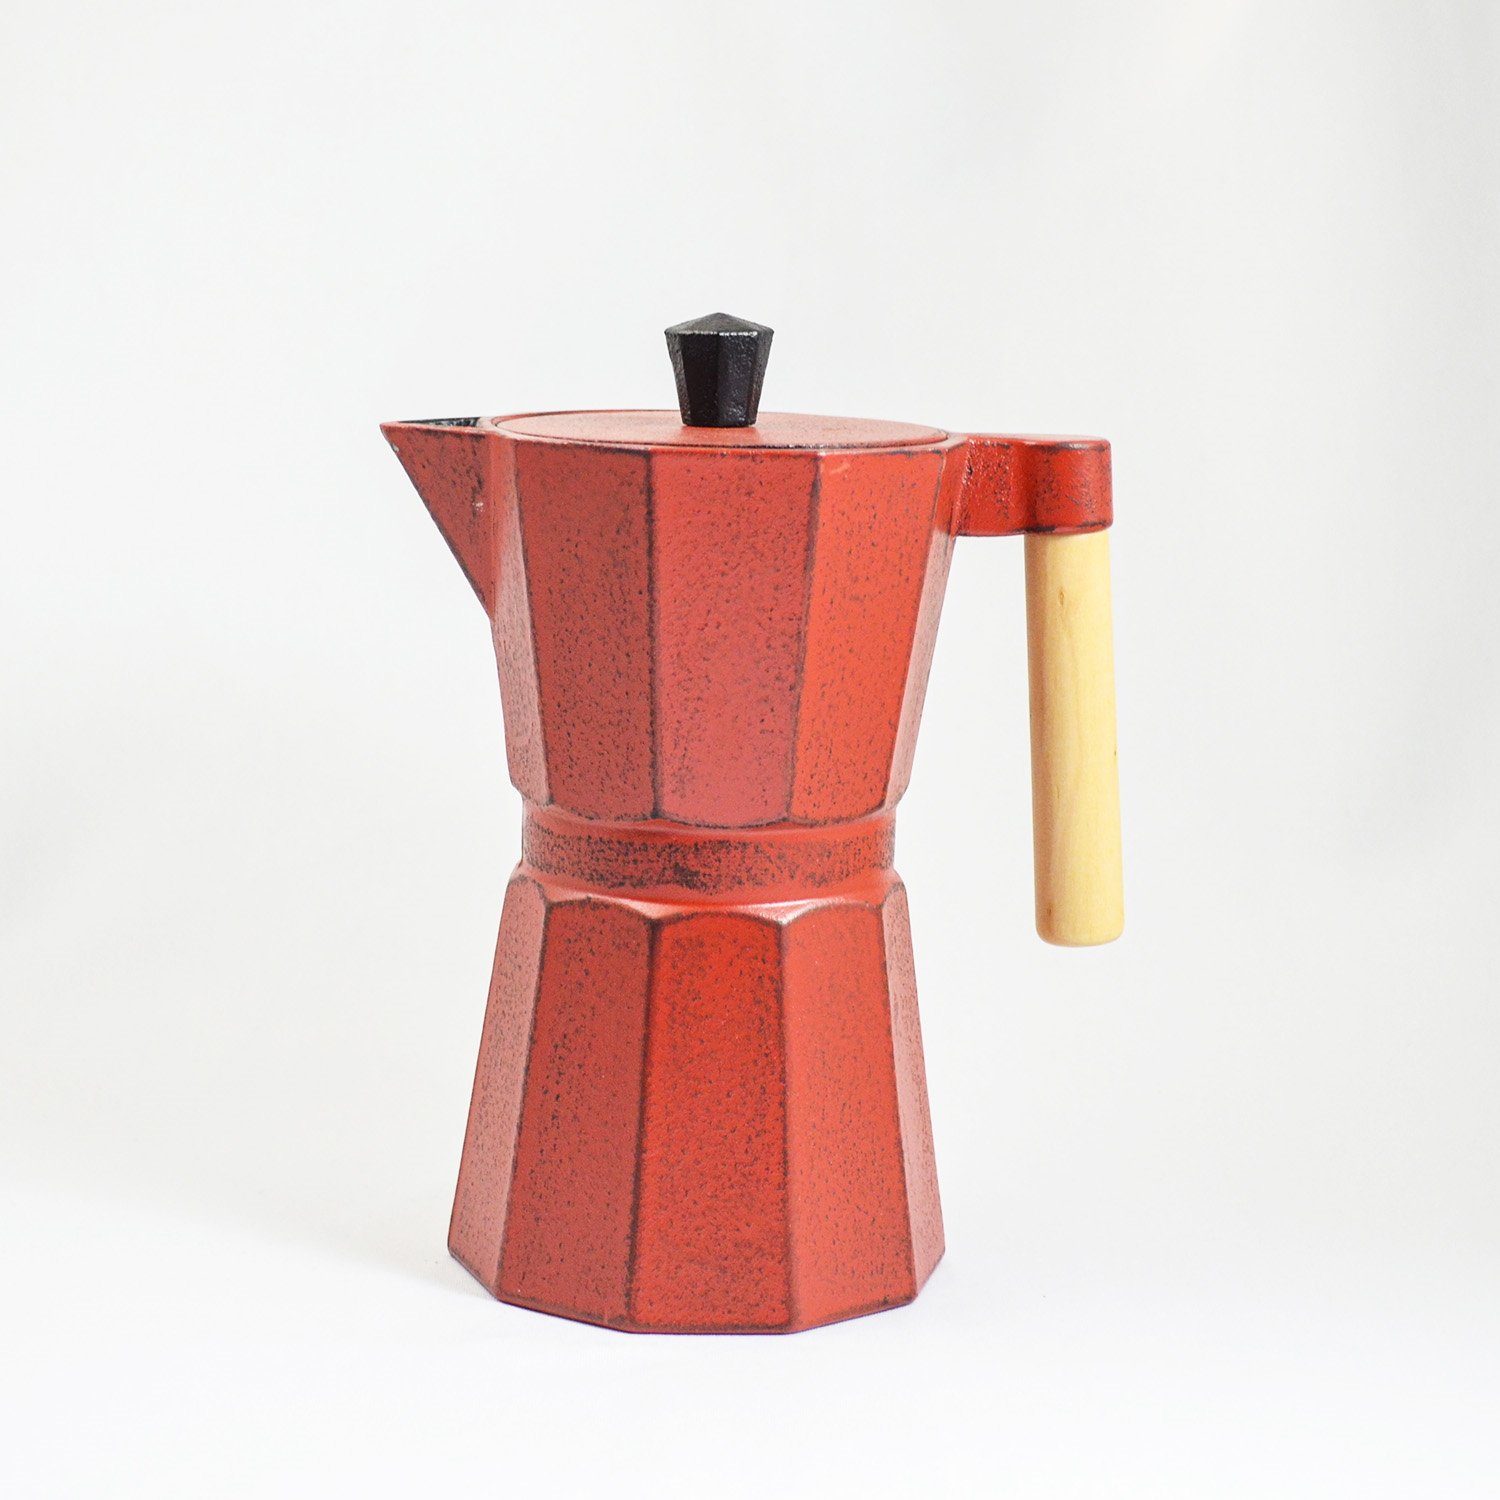 JA-UNENDLICH Teekanne Kafei, 0.8 aus im rot handgefertigt Gusseisen innen emailliert l, Sandgussverfahren